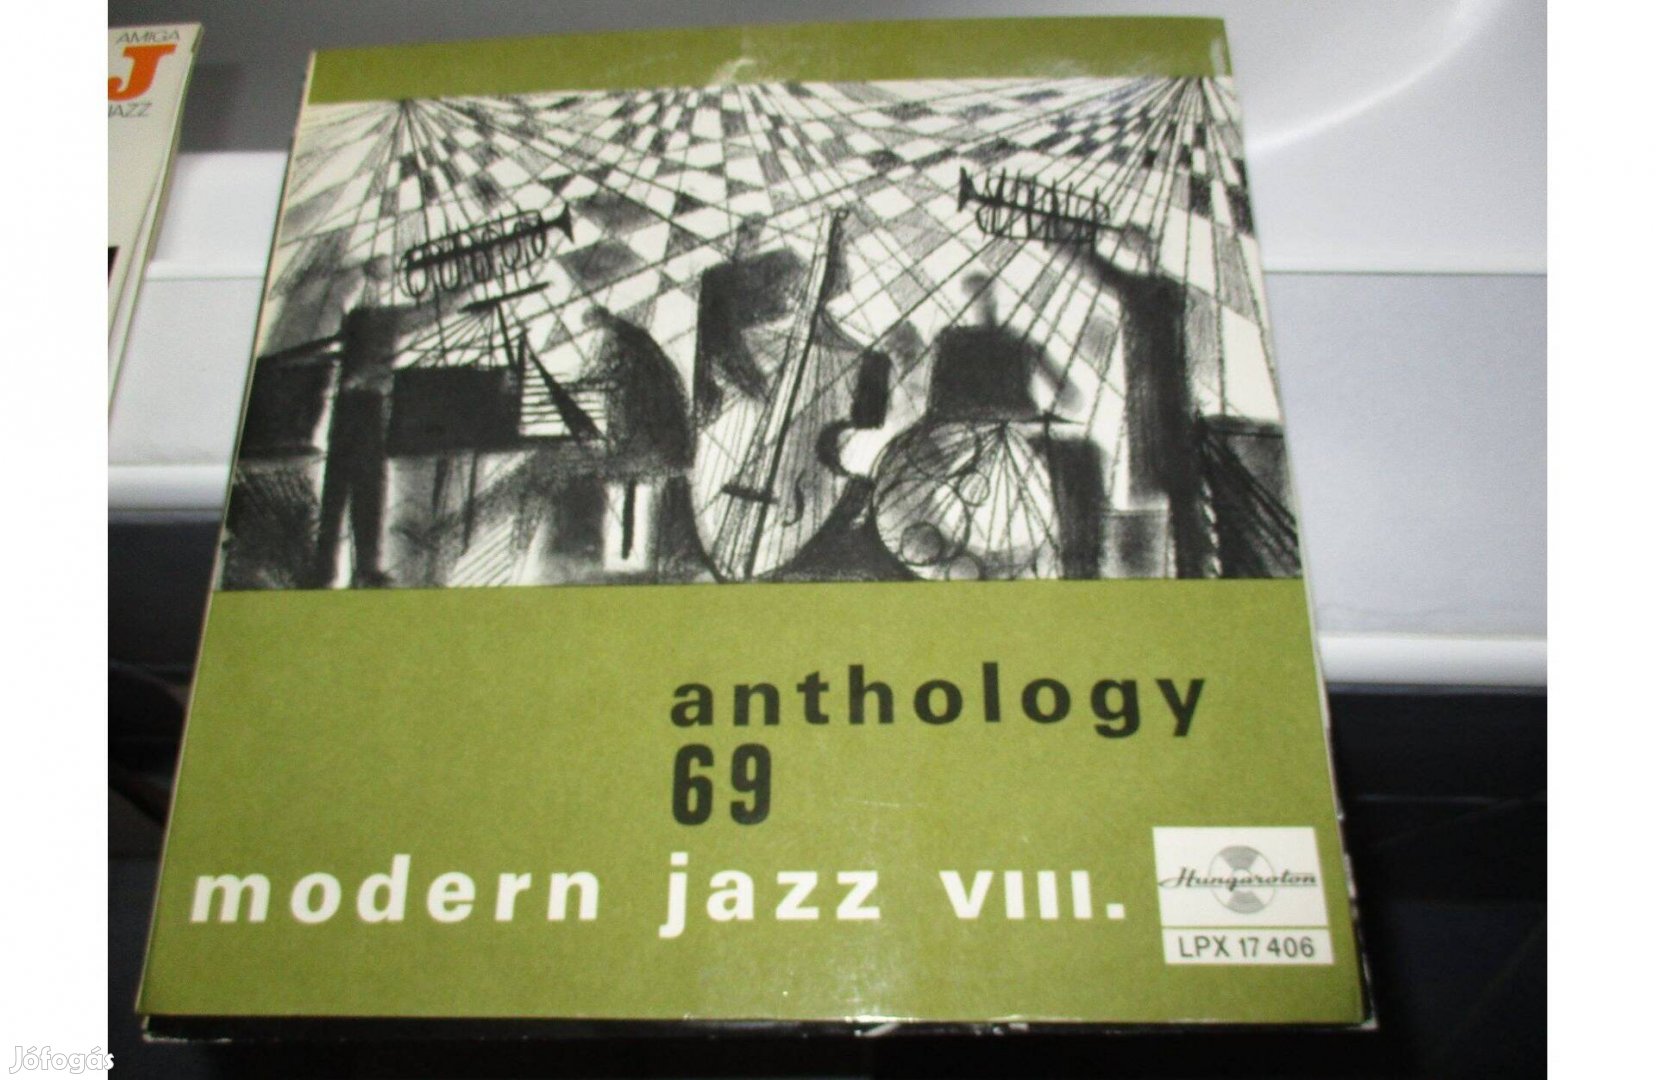 Modern Jazz VIII. - Anthology '69 bakelit hanglemez eladó